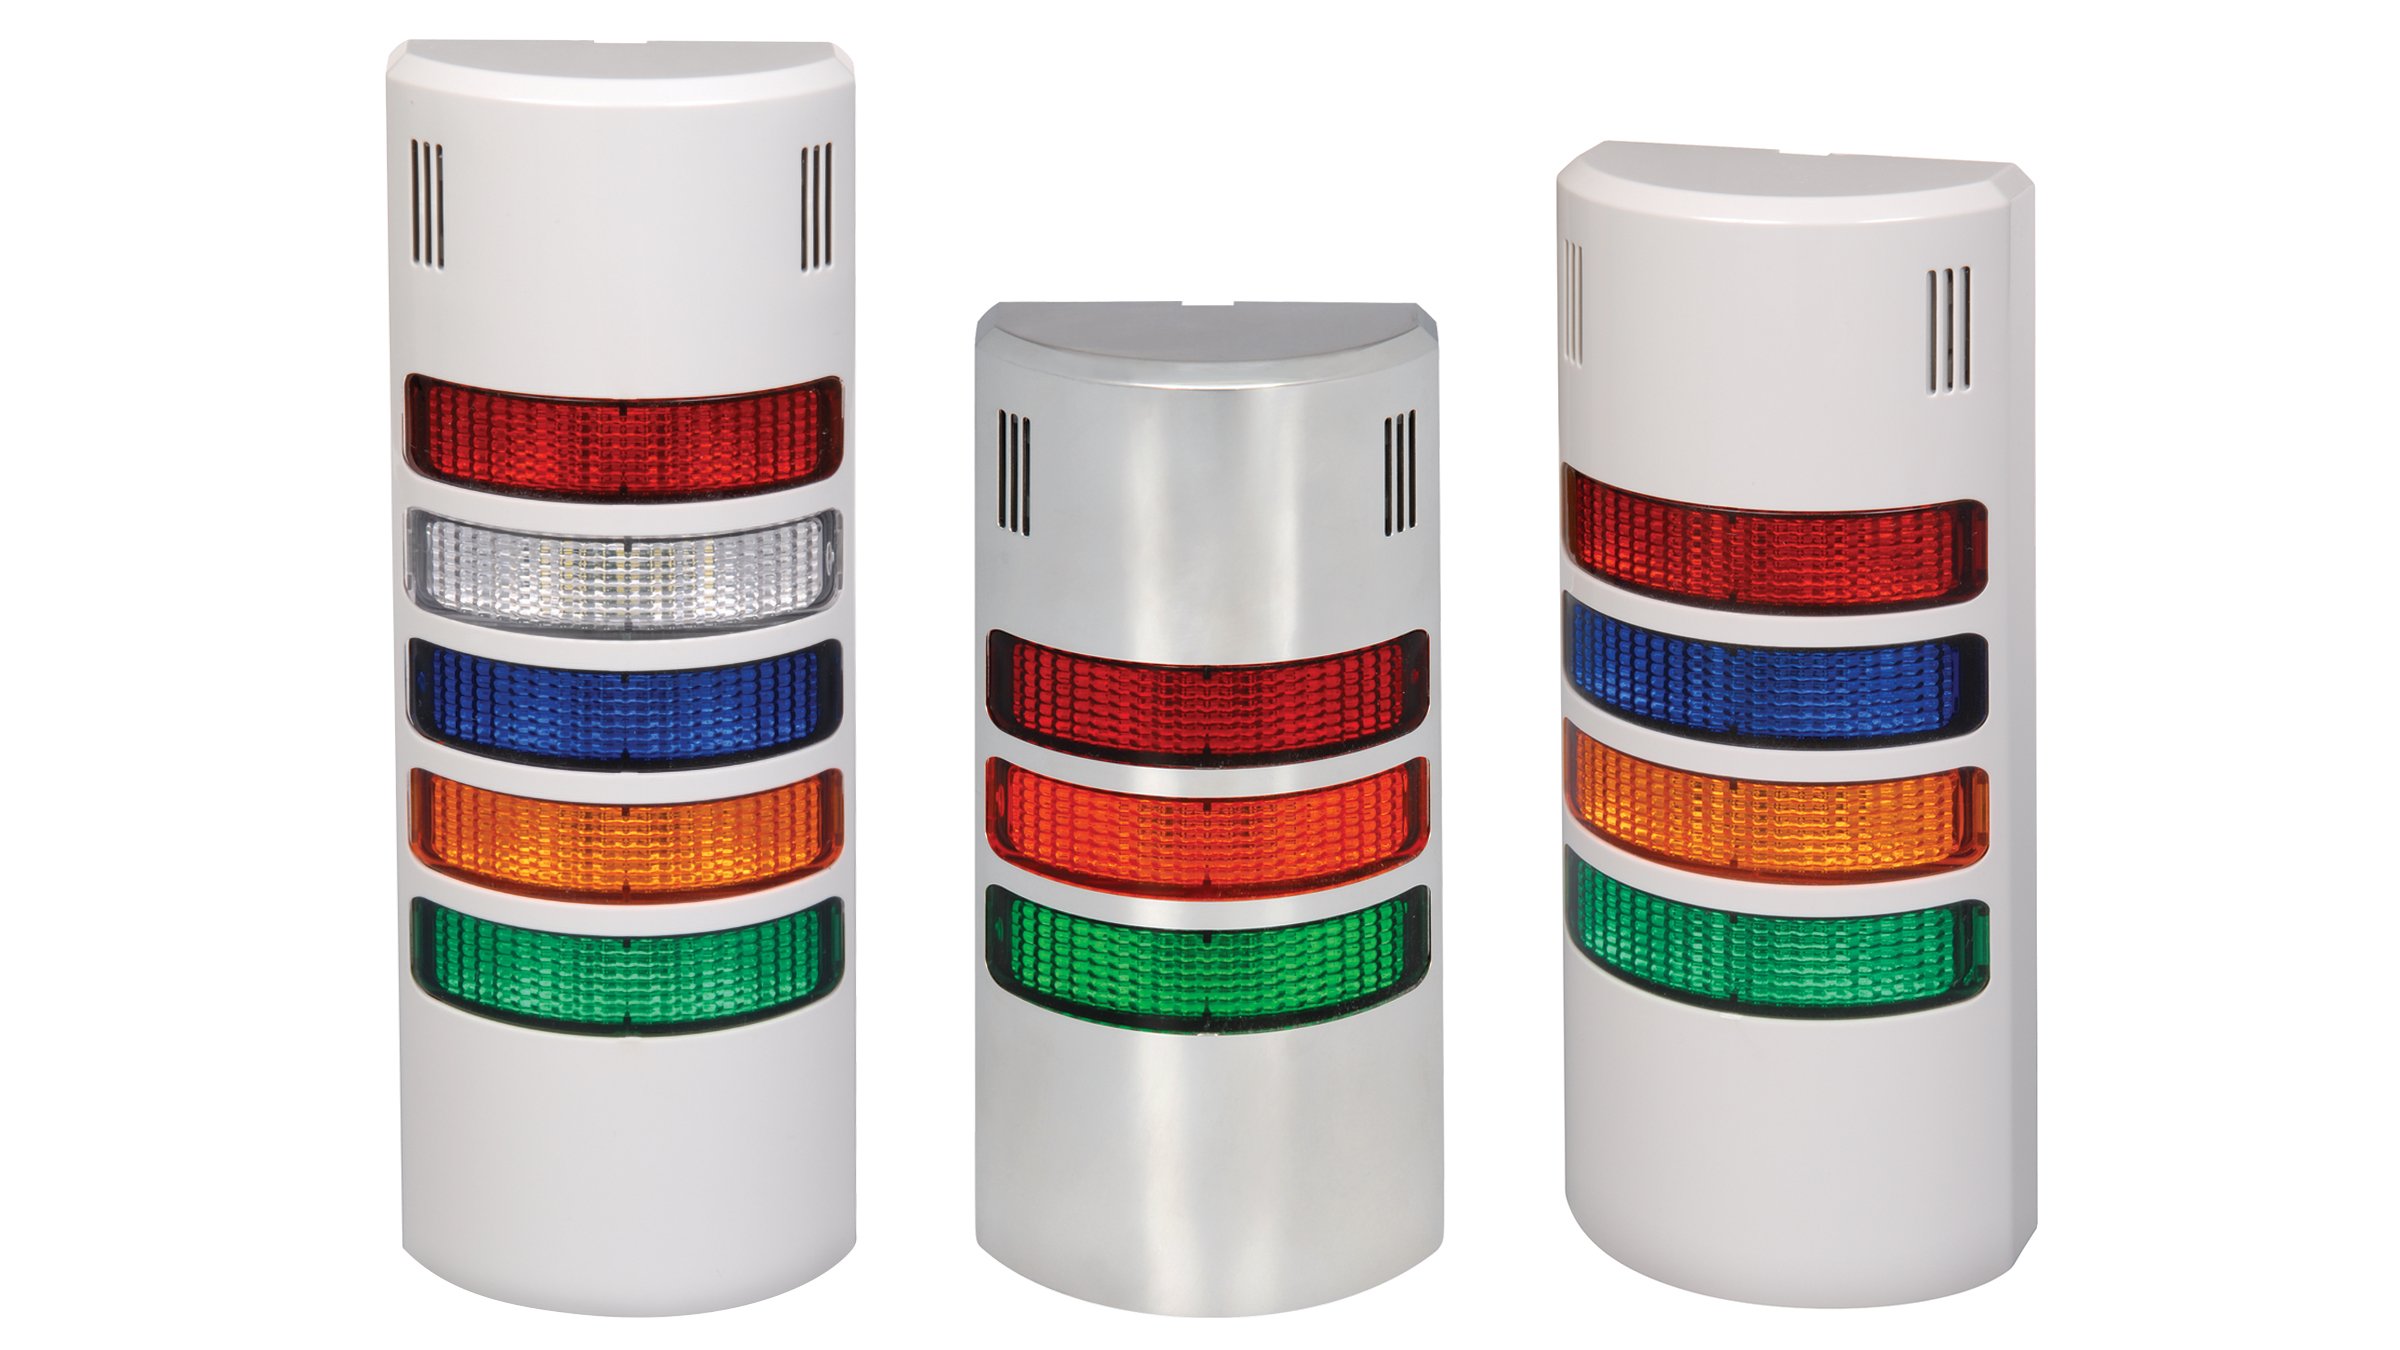 三種版本的 855 壁掛式訊號燈；一種是紅/白/藍/橘/綠燈；一種是紅/橘/綠燈；一種是紅/藍/橘/綠燈